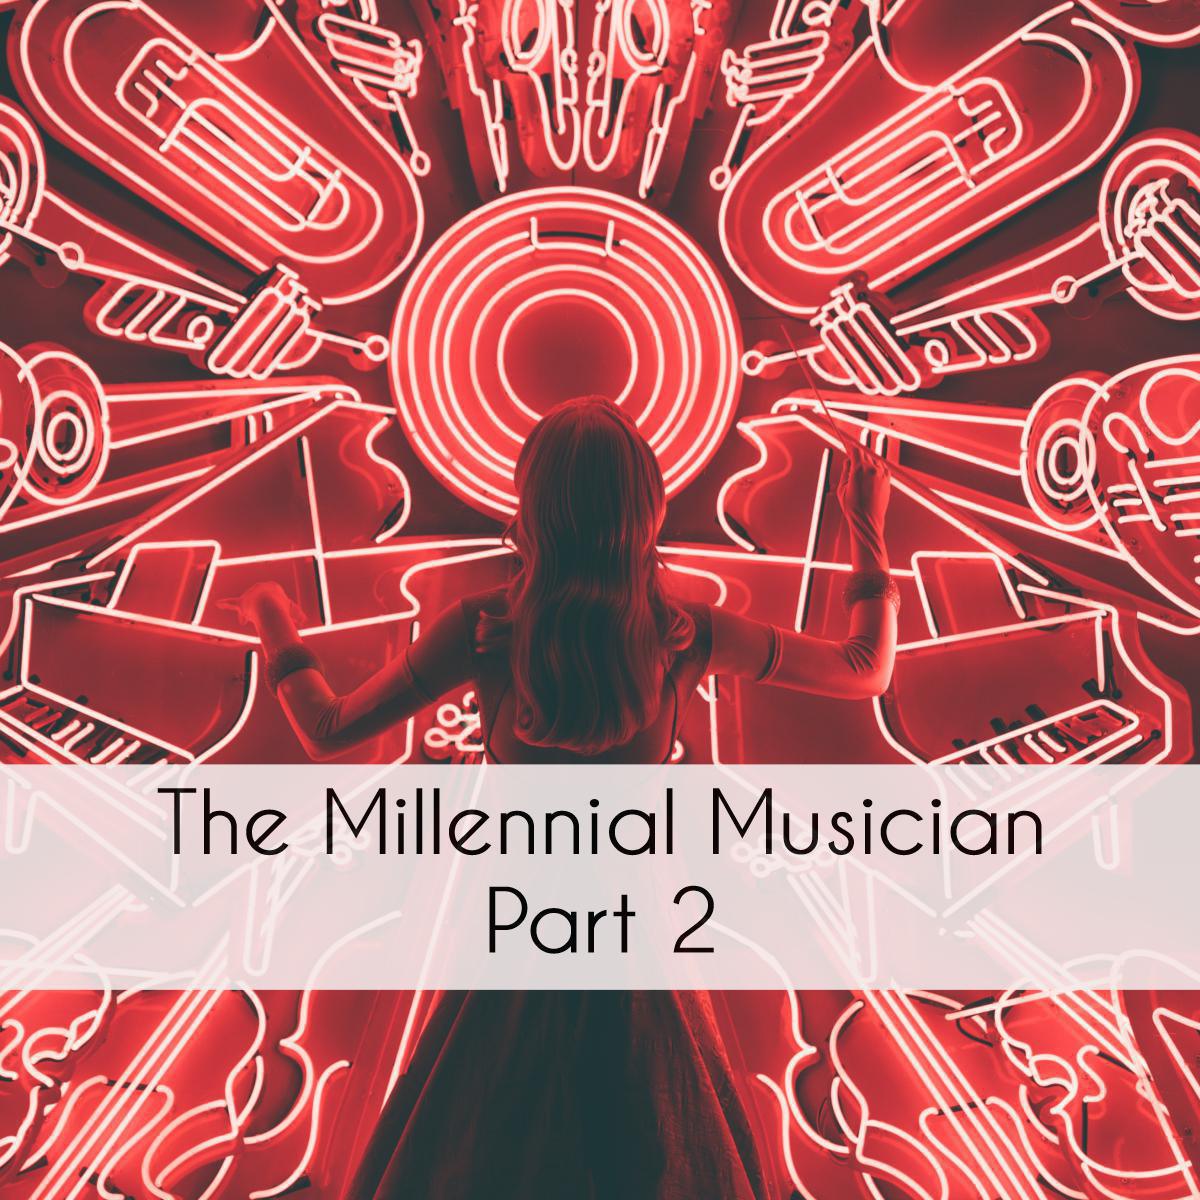 The Millennial Musician: Part 2